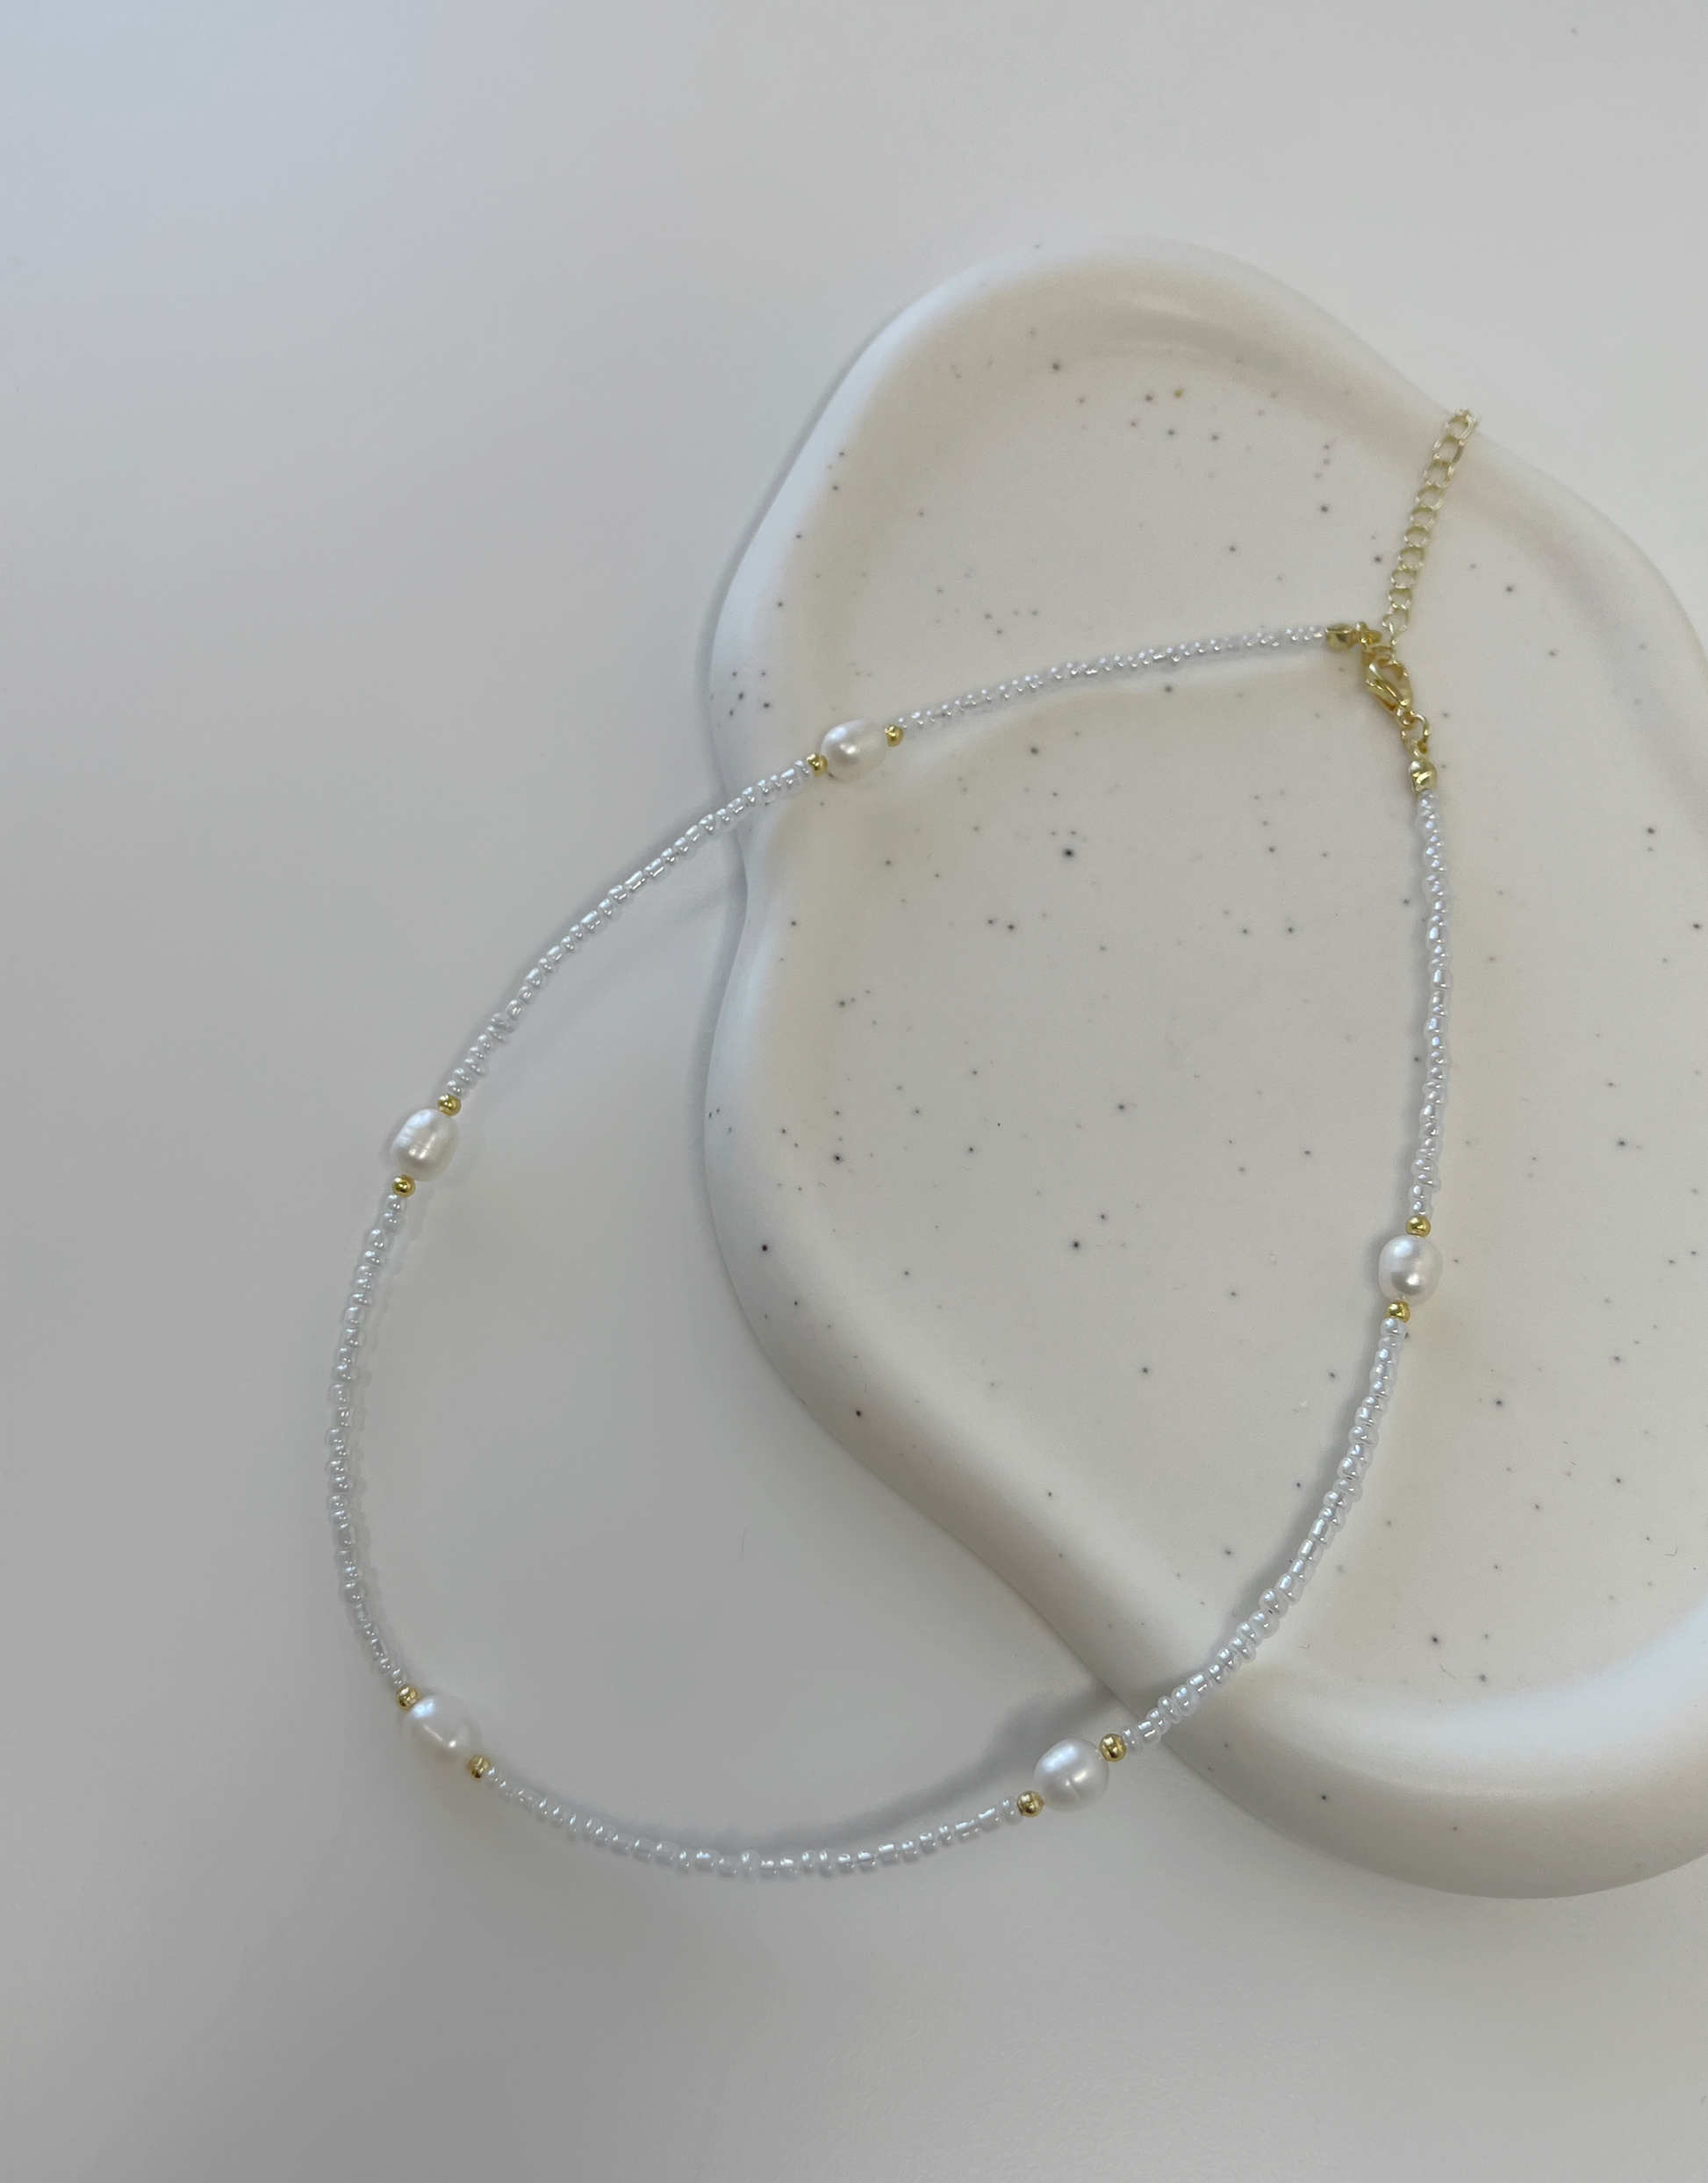 Nellie halskæde fyldt med perler.  Denne halskæde er til dig, som elsker, at pifte dit look op med unikke smykker.   Materiale: Rustfri stål, guldbelagt. Perler. 100% nikkelfri.